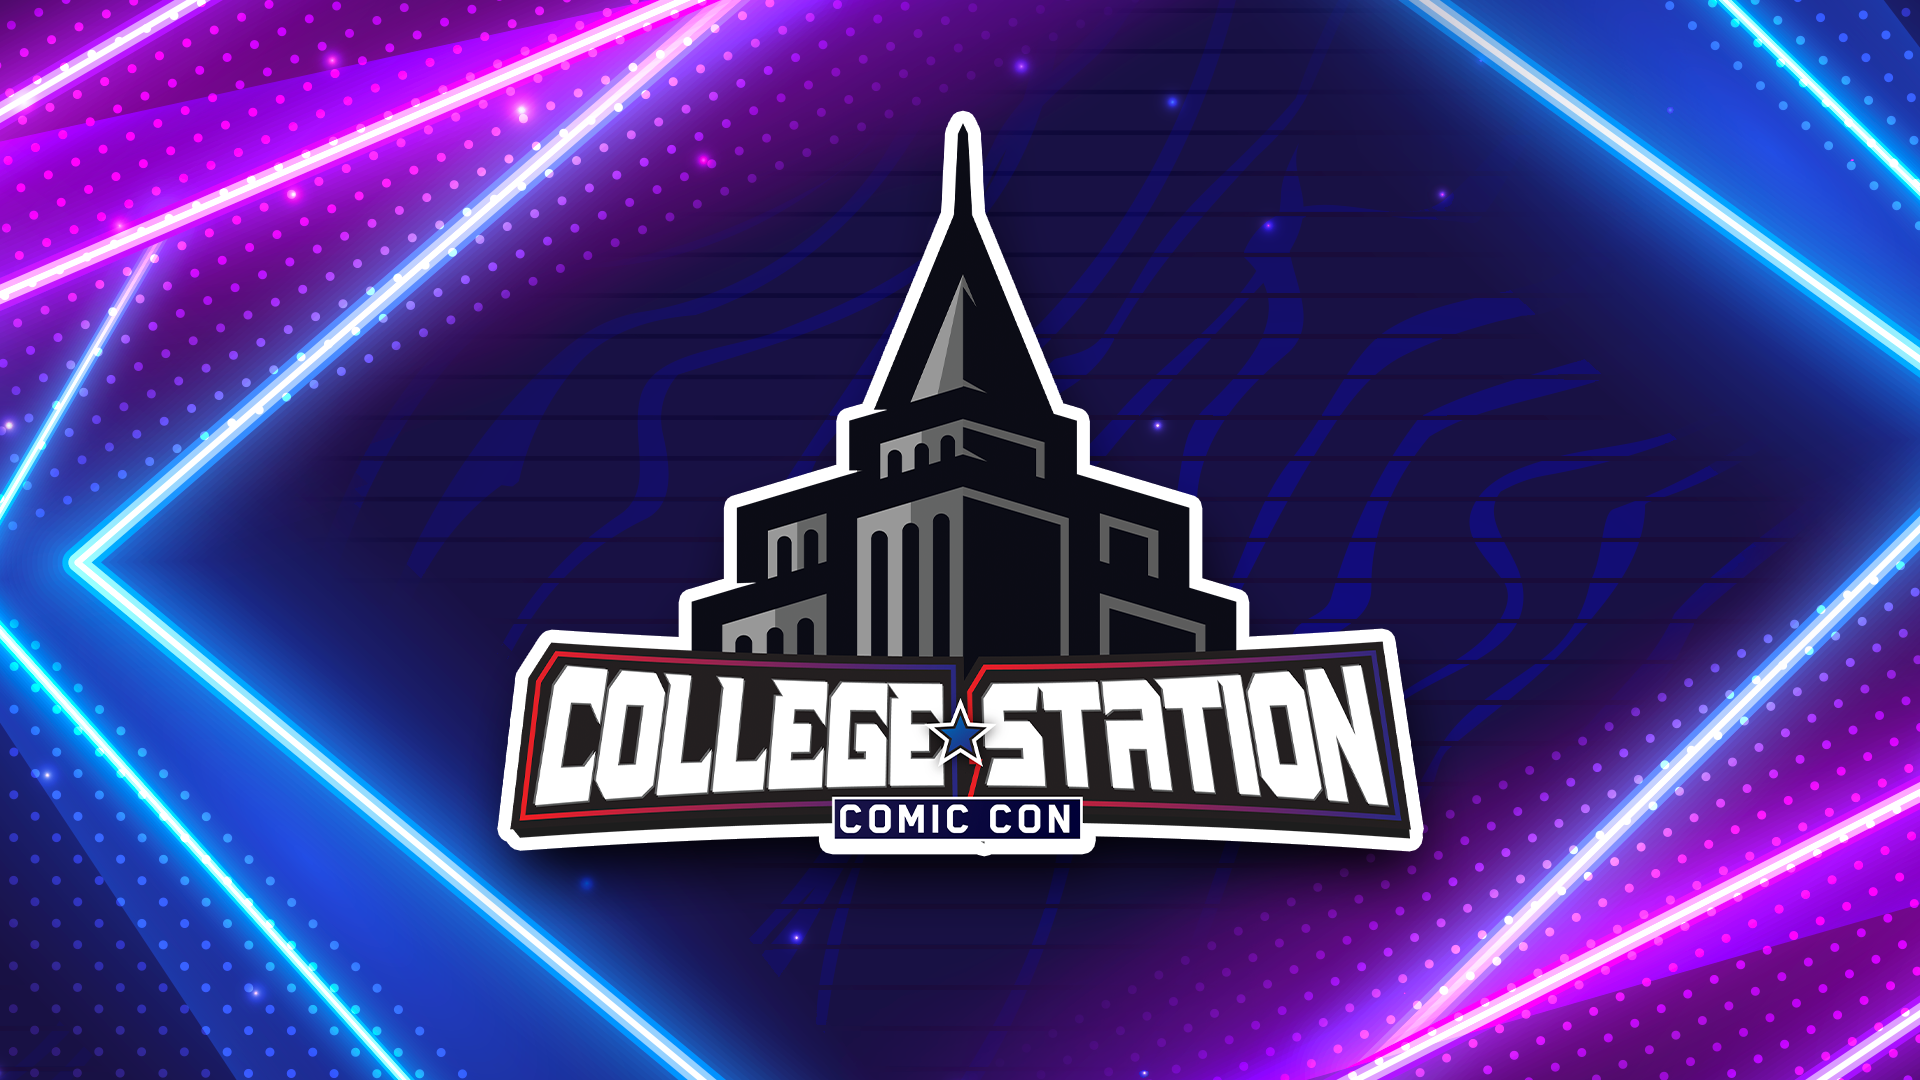 College Station Comic Con